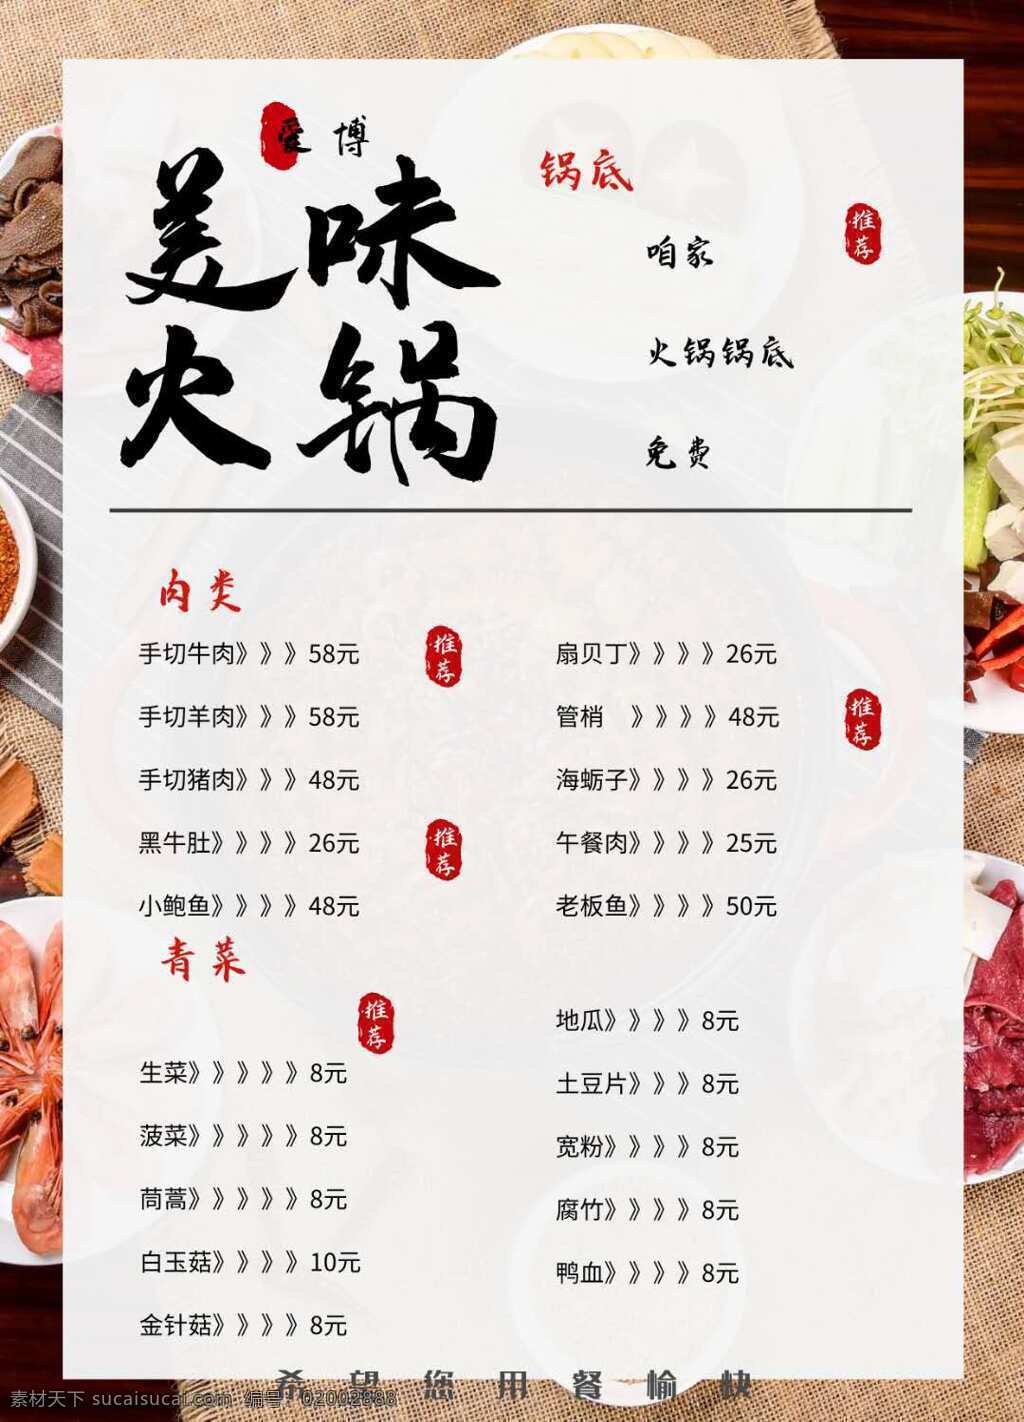 菜单图片 美味 火锅 菜单 价钱 菜系